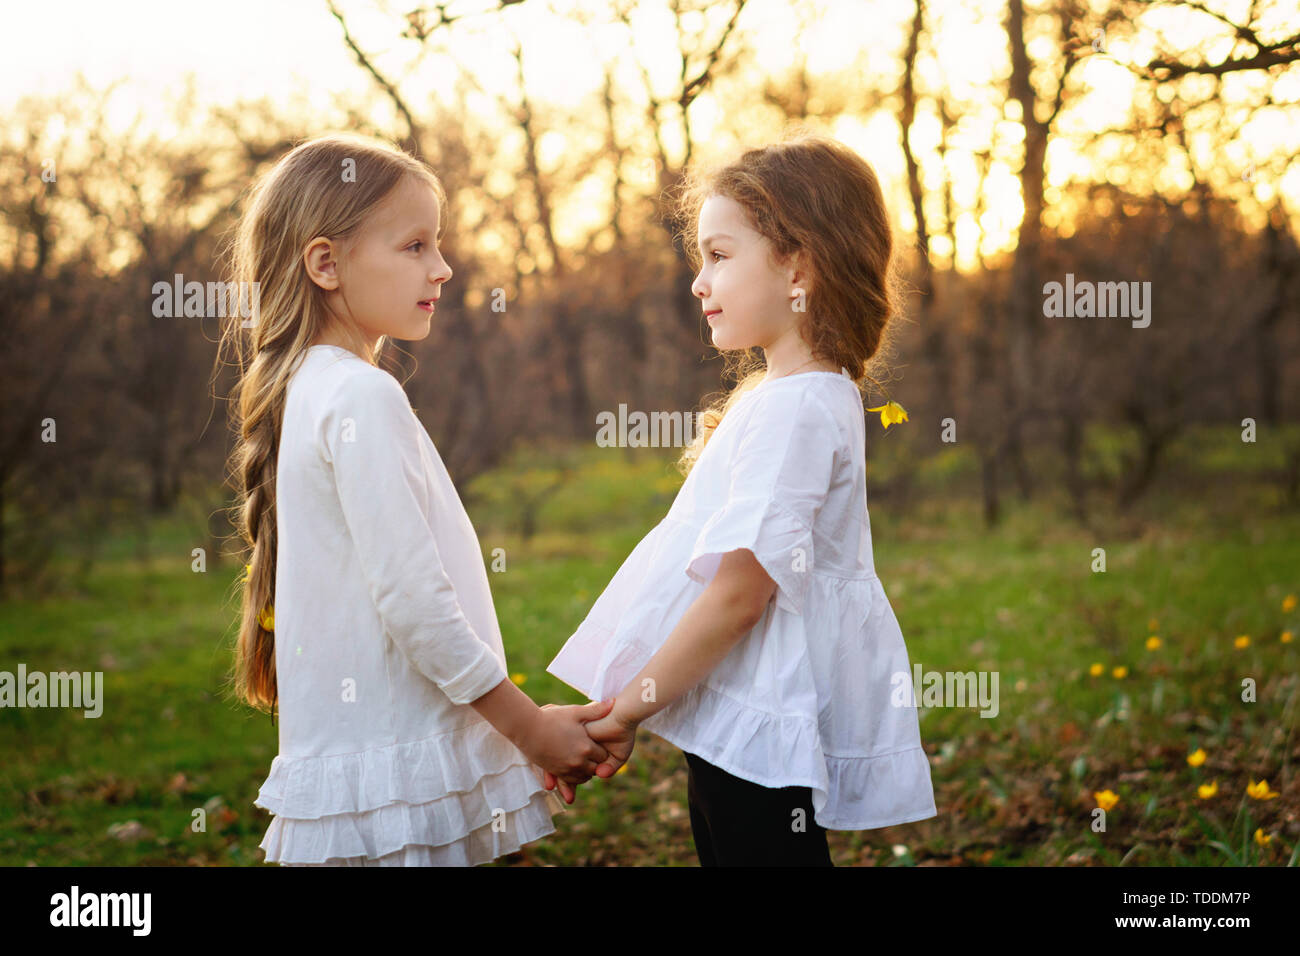 Süße kleine Mädchen in weißen Kleidern an einander in die Augen schauen. Porträt der Schwestern in Frühlingswiese. Freundschaft und Vertrauen Konzept Stockfoto